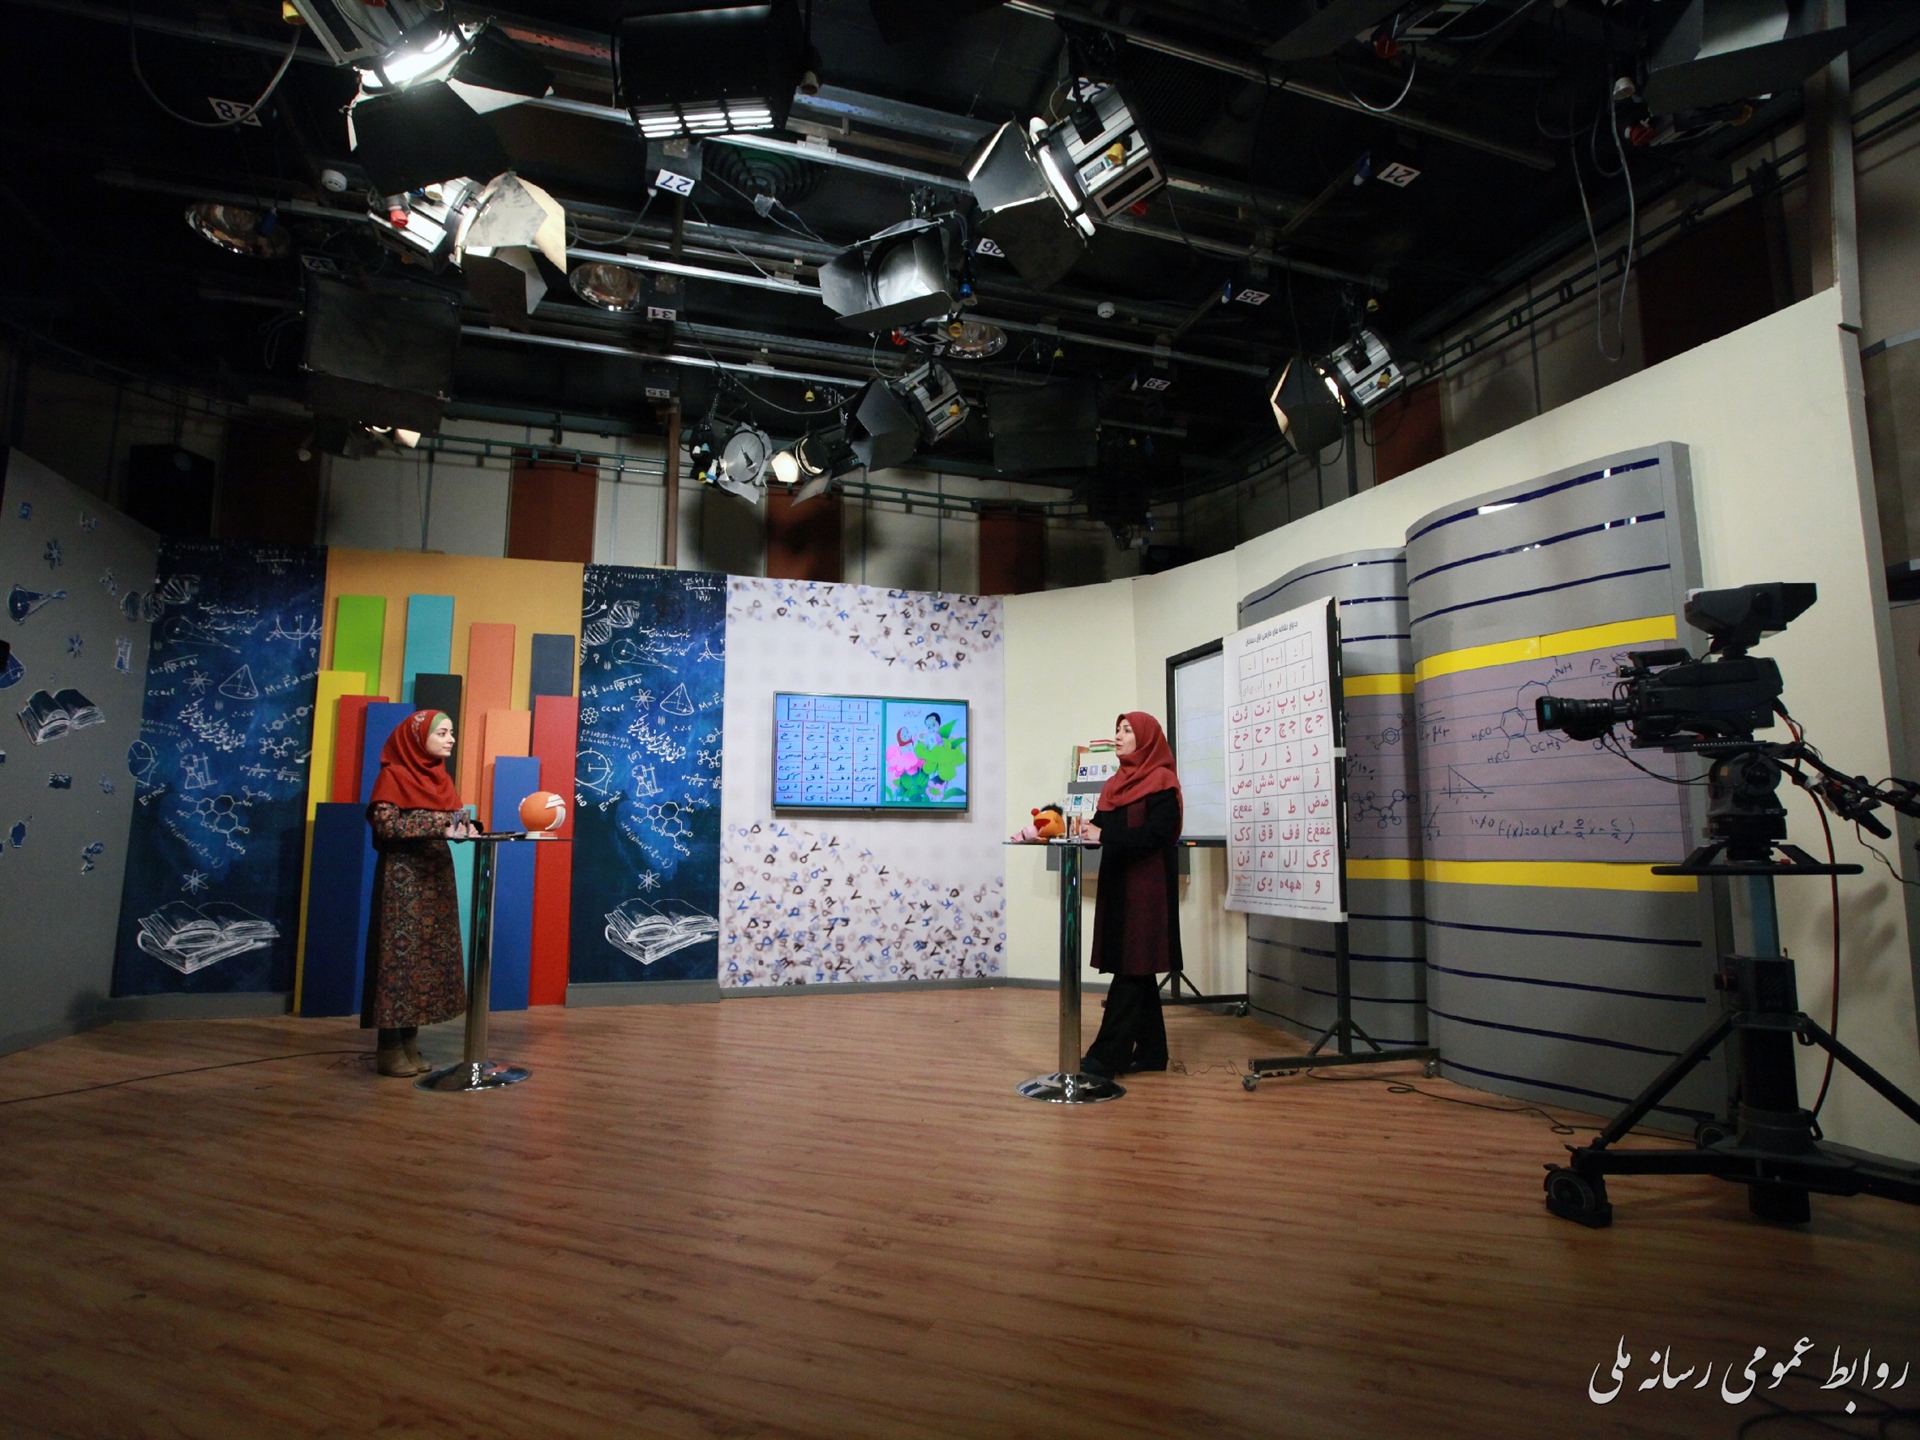 ابتکار مدرسه تلویزیونی ایران موفق بود/ رسانه ملی در این اوضاع کرونایی ایثار کرد